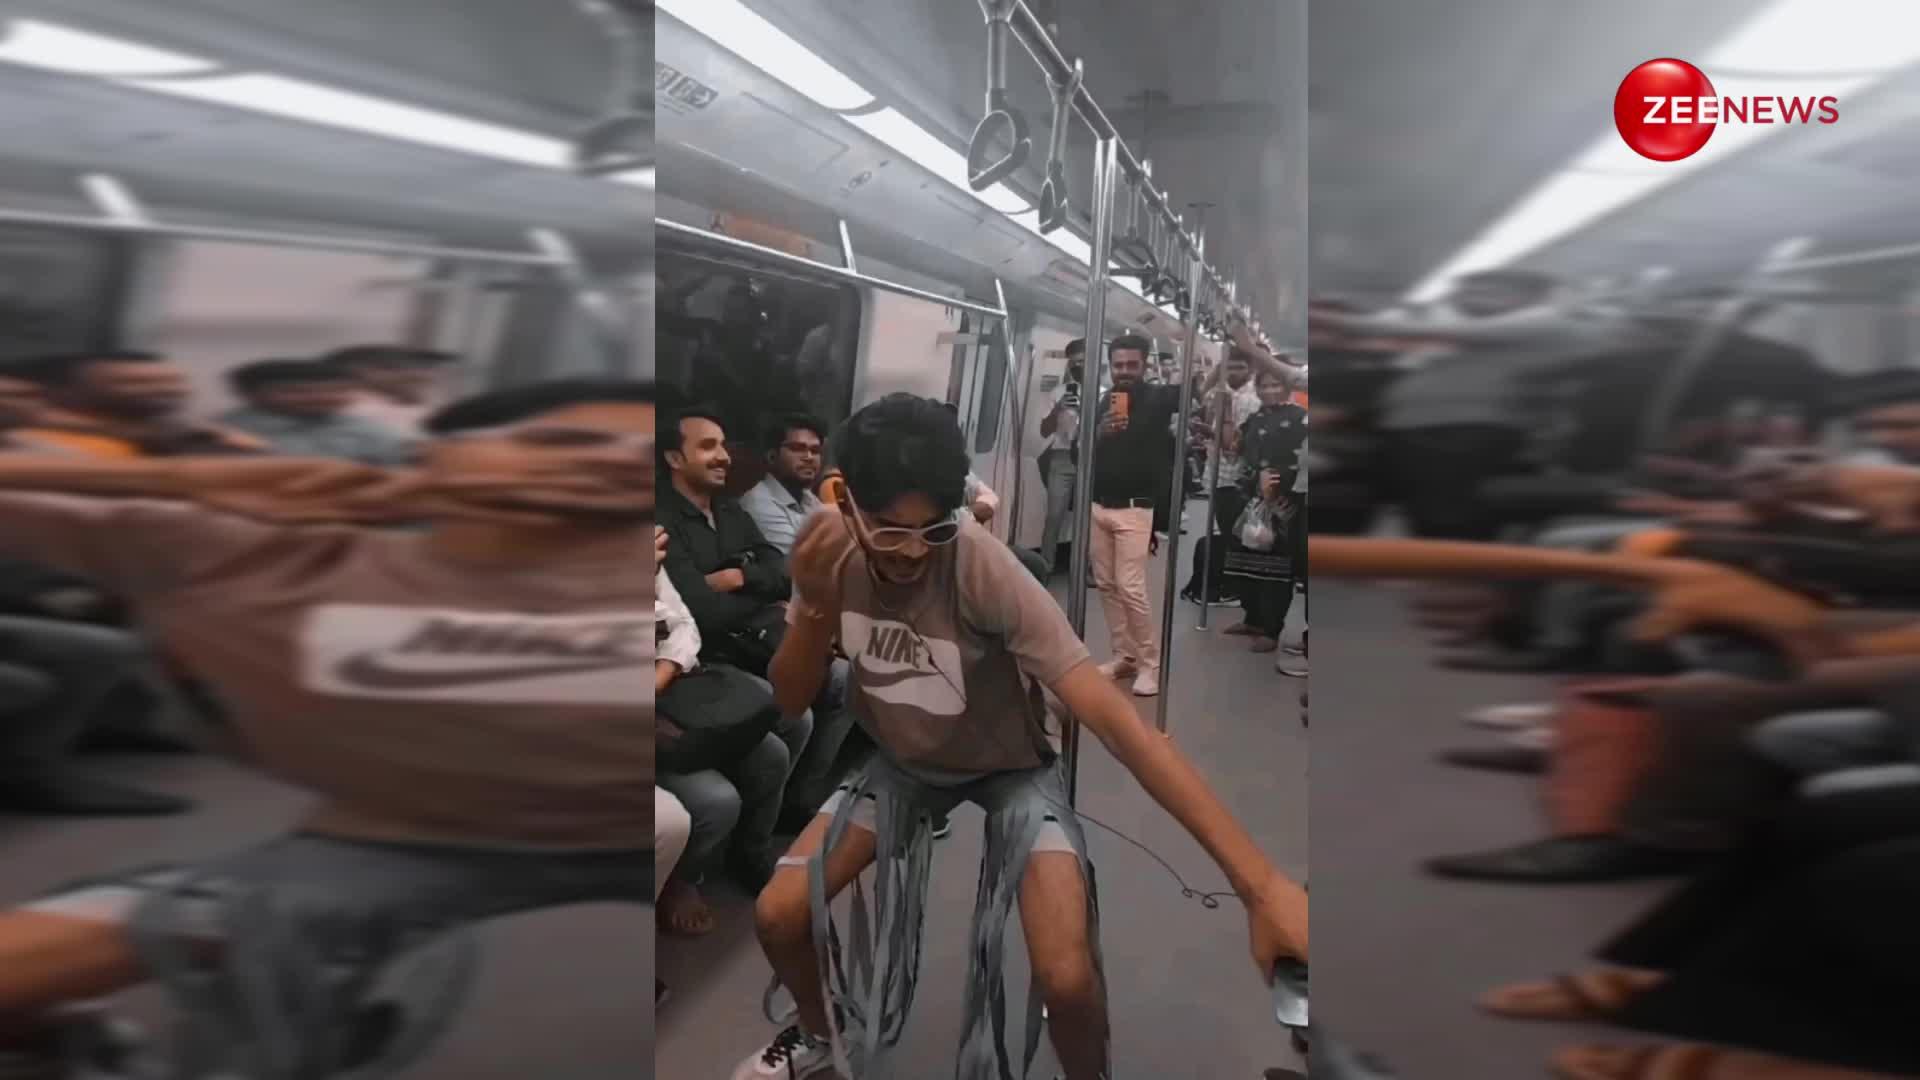 टूटा हुआ चश्मा लगाकर Urfi Javed जैसे कपड़े पहन लड़के ने दिल्ली मेट्रो में अपने डांस से मचाया बवाल